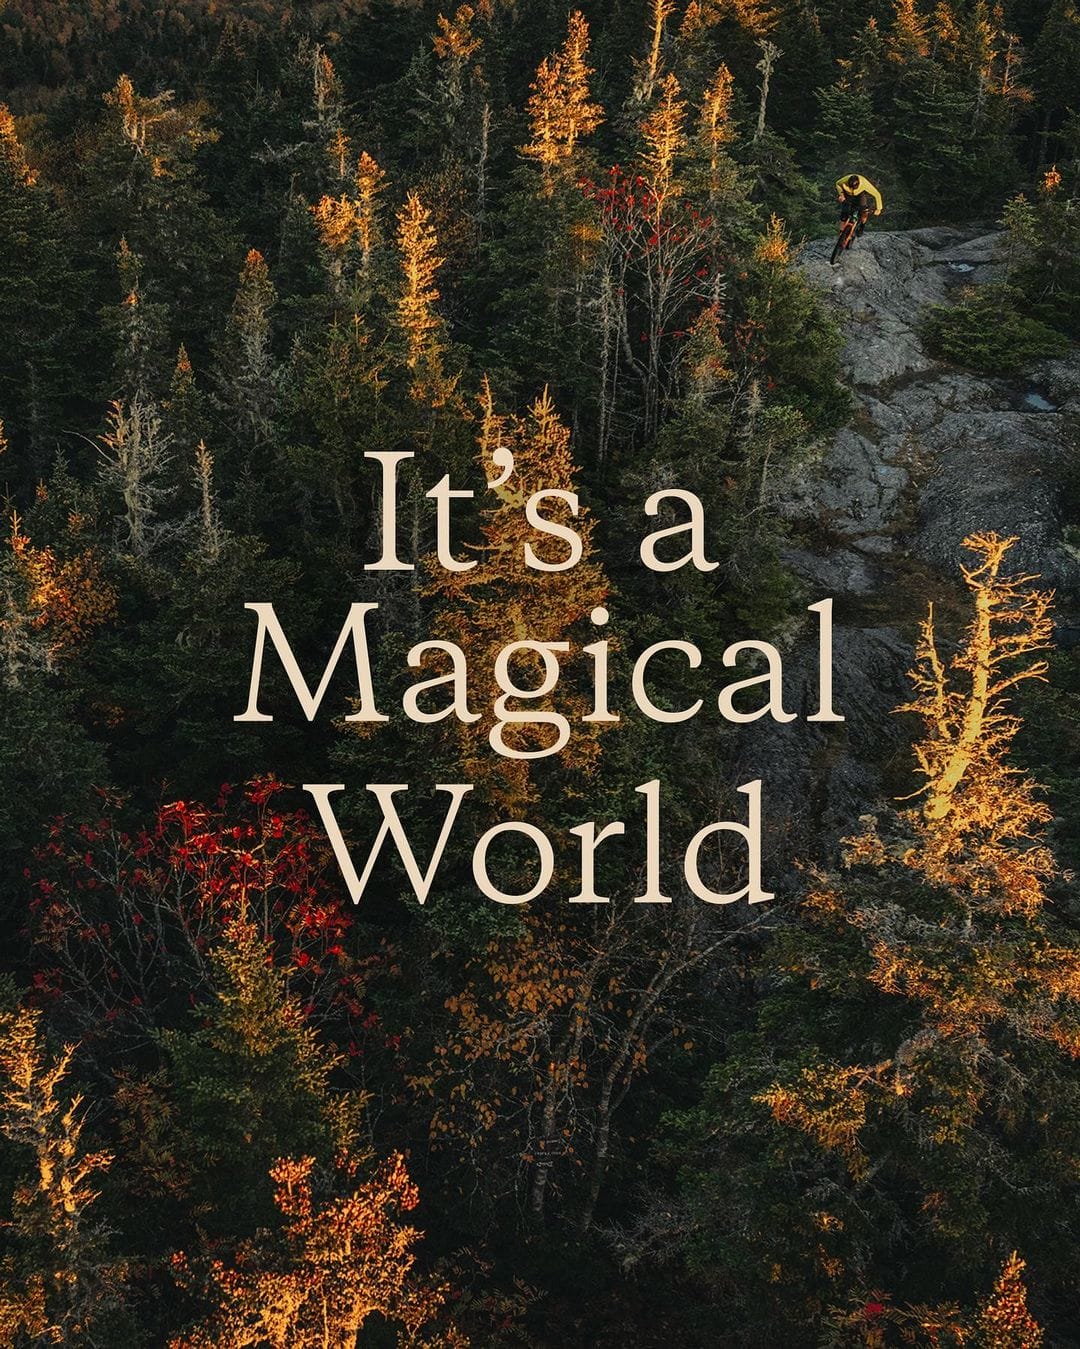 Photo d'une belle forêt sous un couché de soleil avec l'inscription "It's a Magical World"